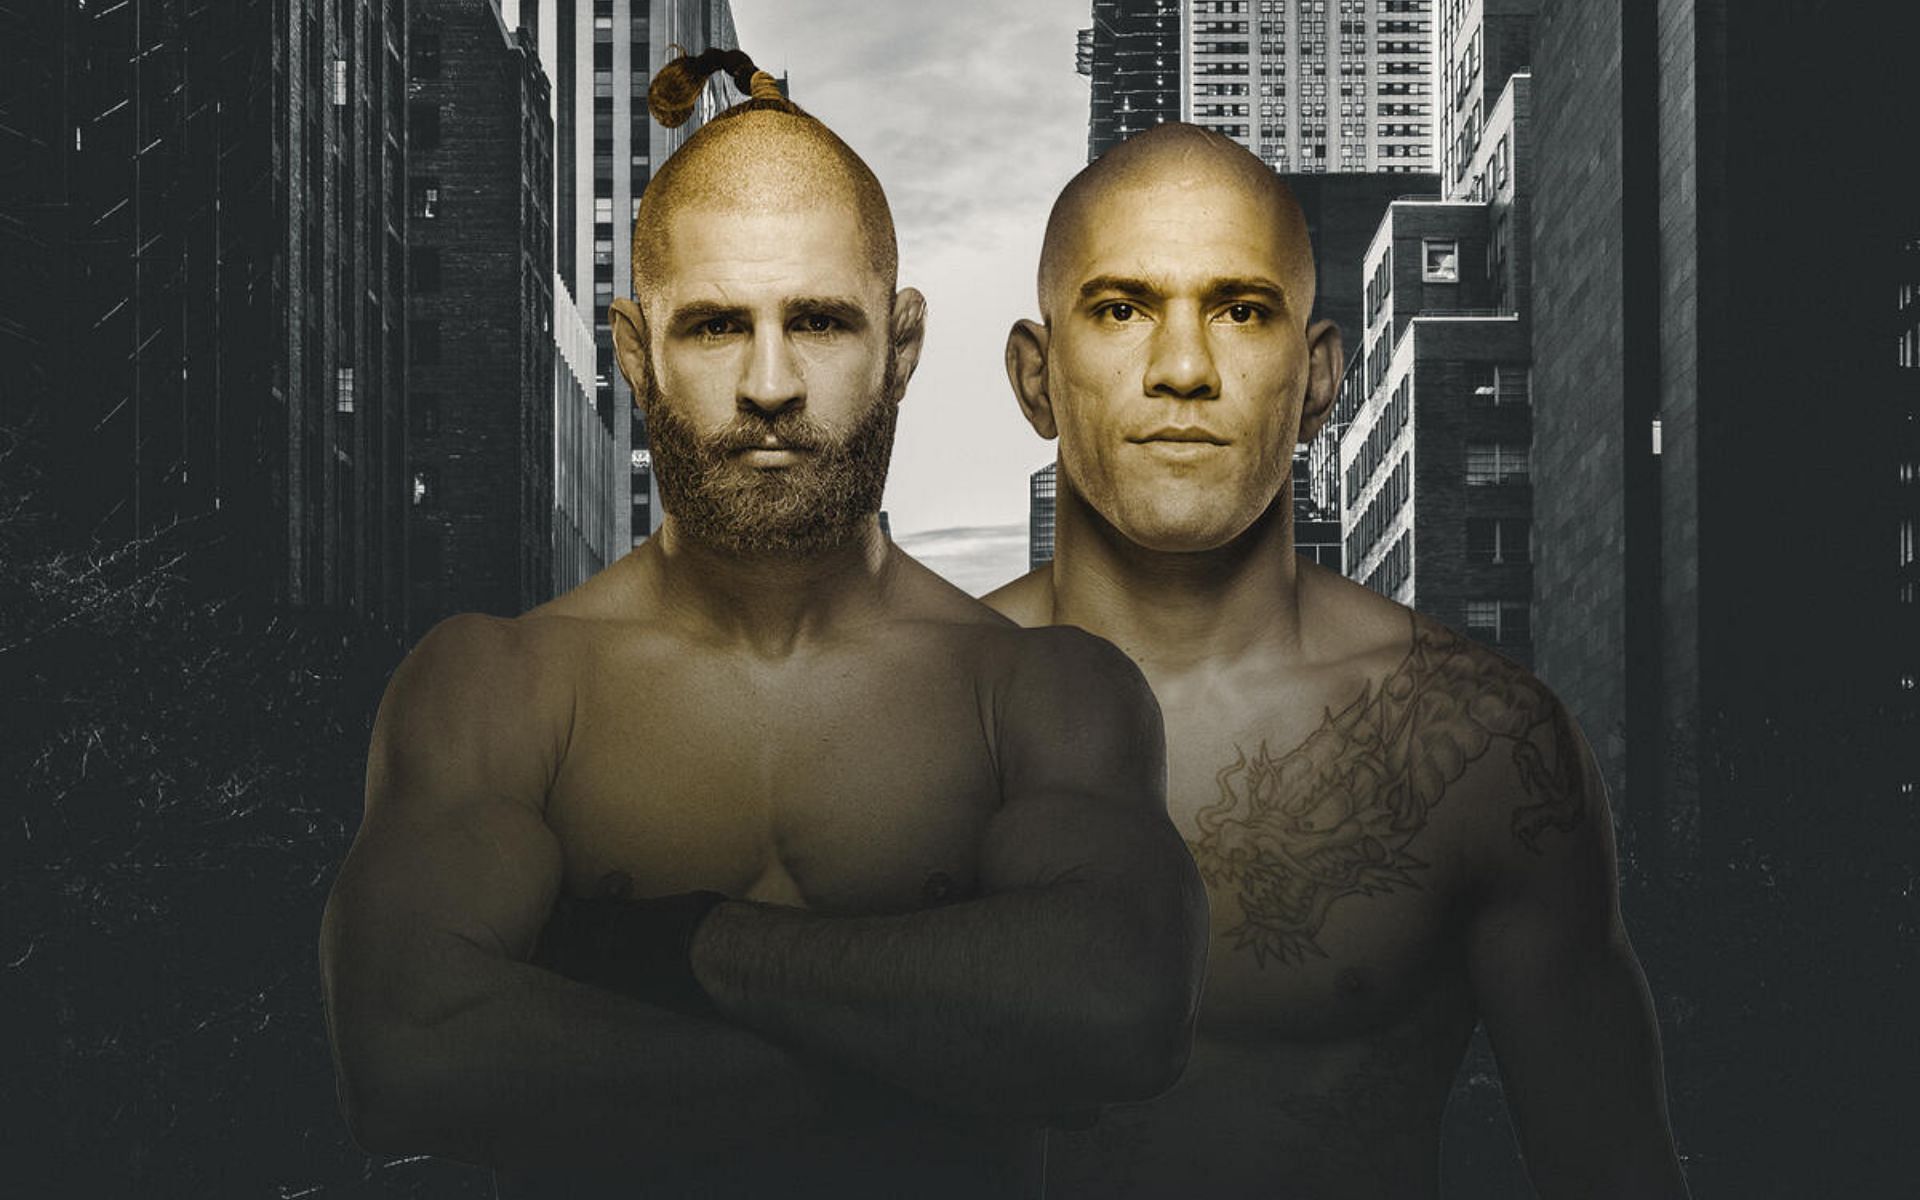 UFC 295: Prochazka vs. Pereira